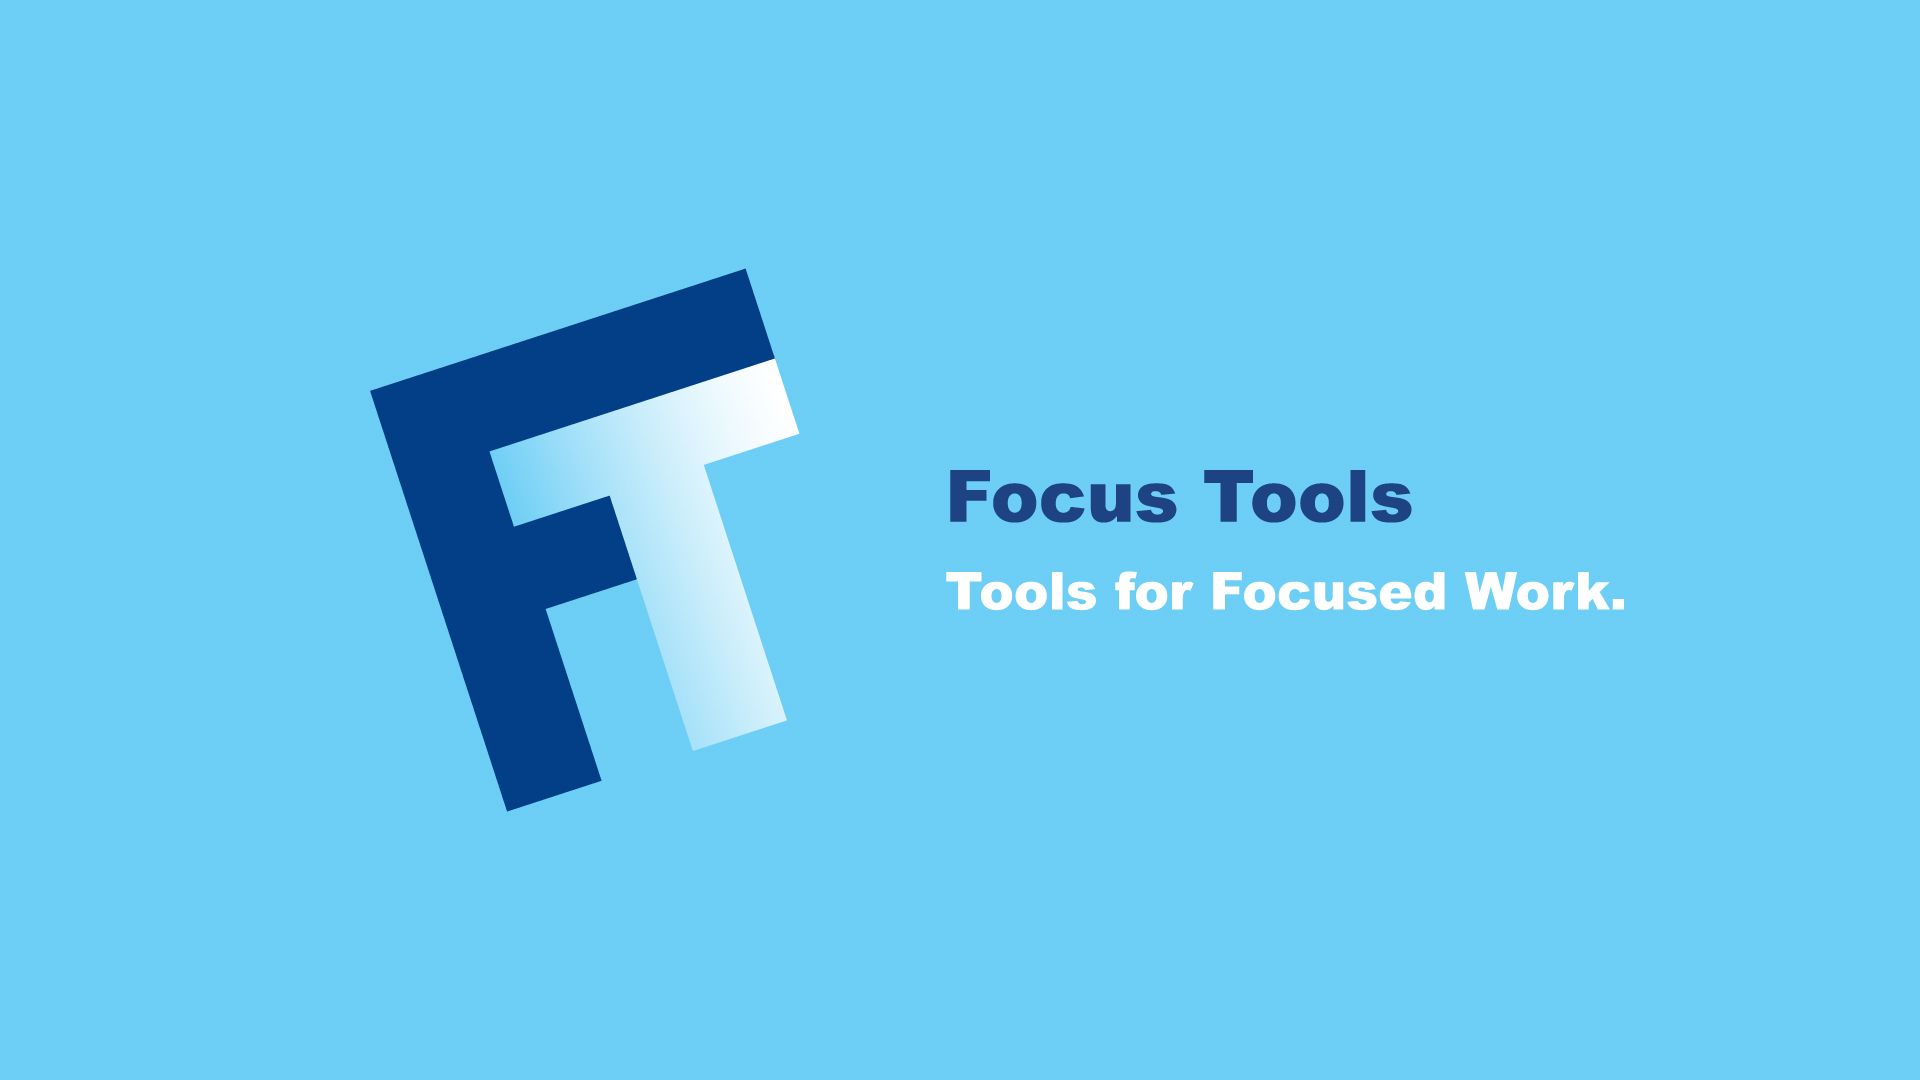 Focus Tools